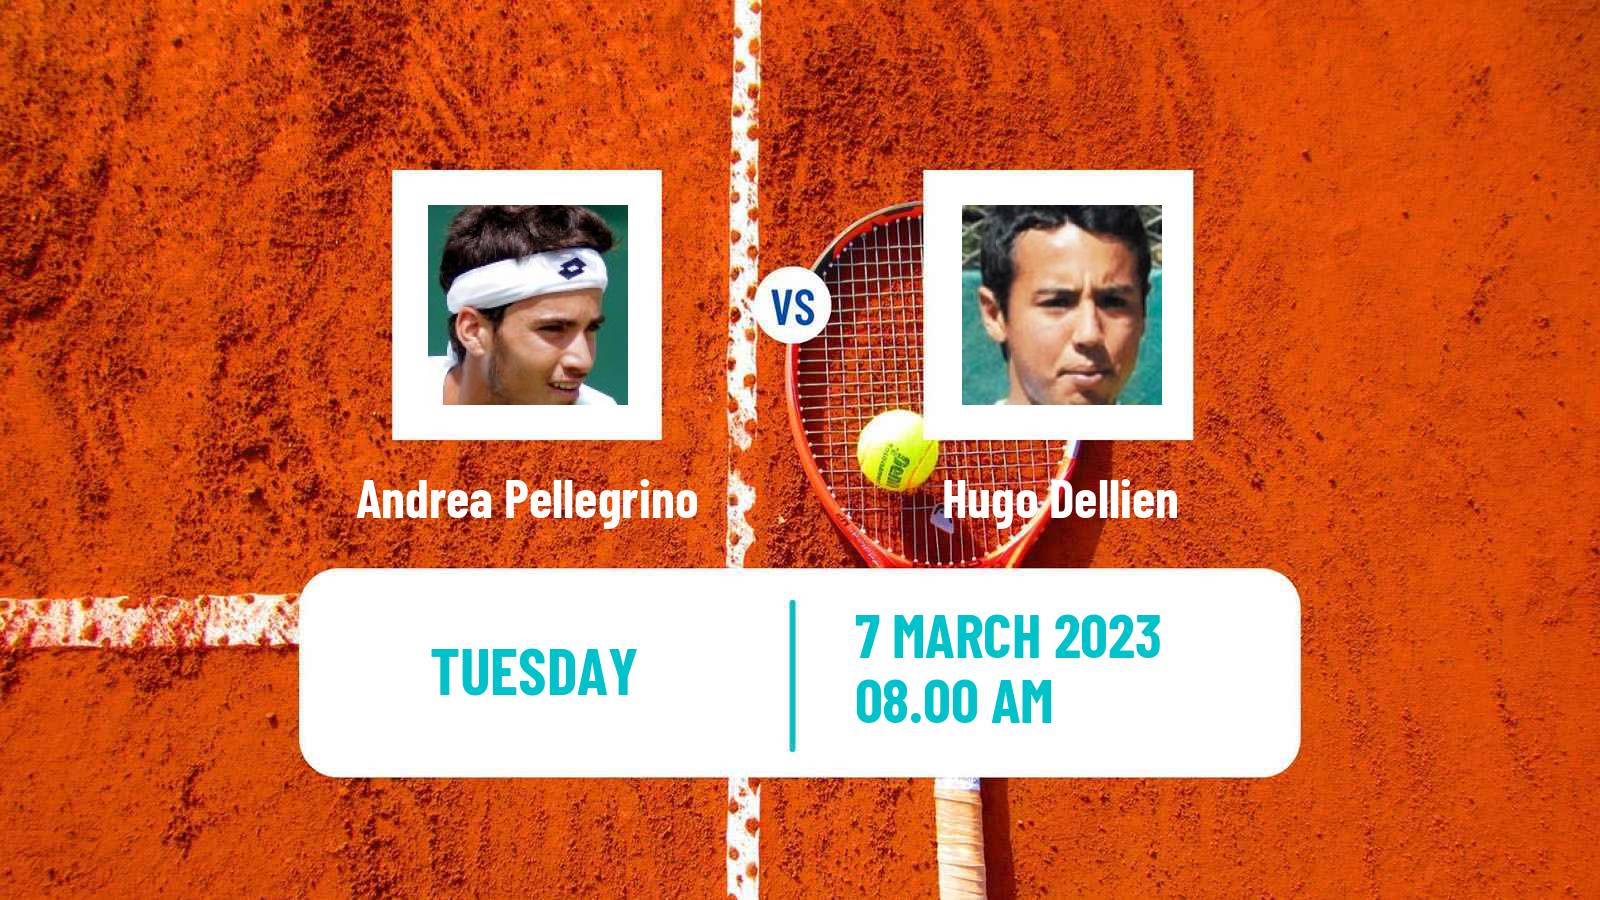 Tennis ATP Challenger Andrea Pellegrino - Hugo Dellien